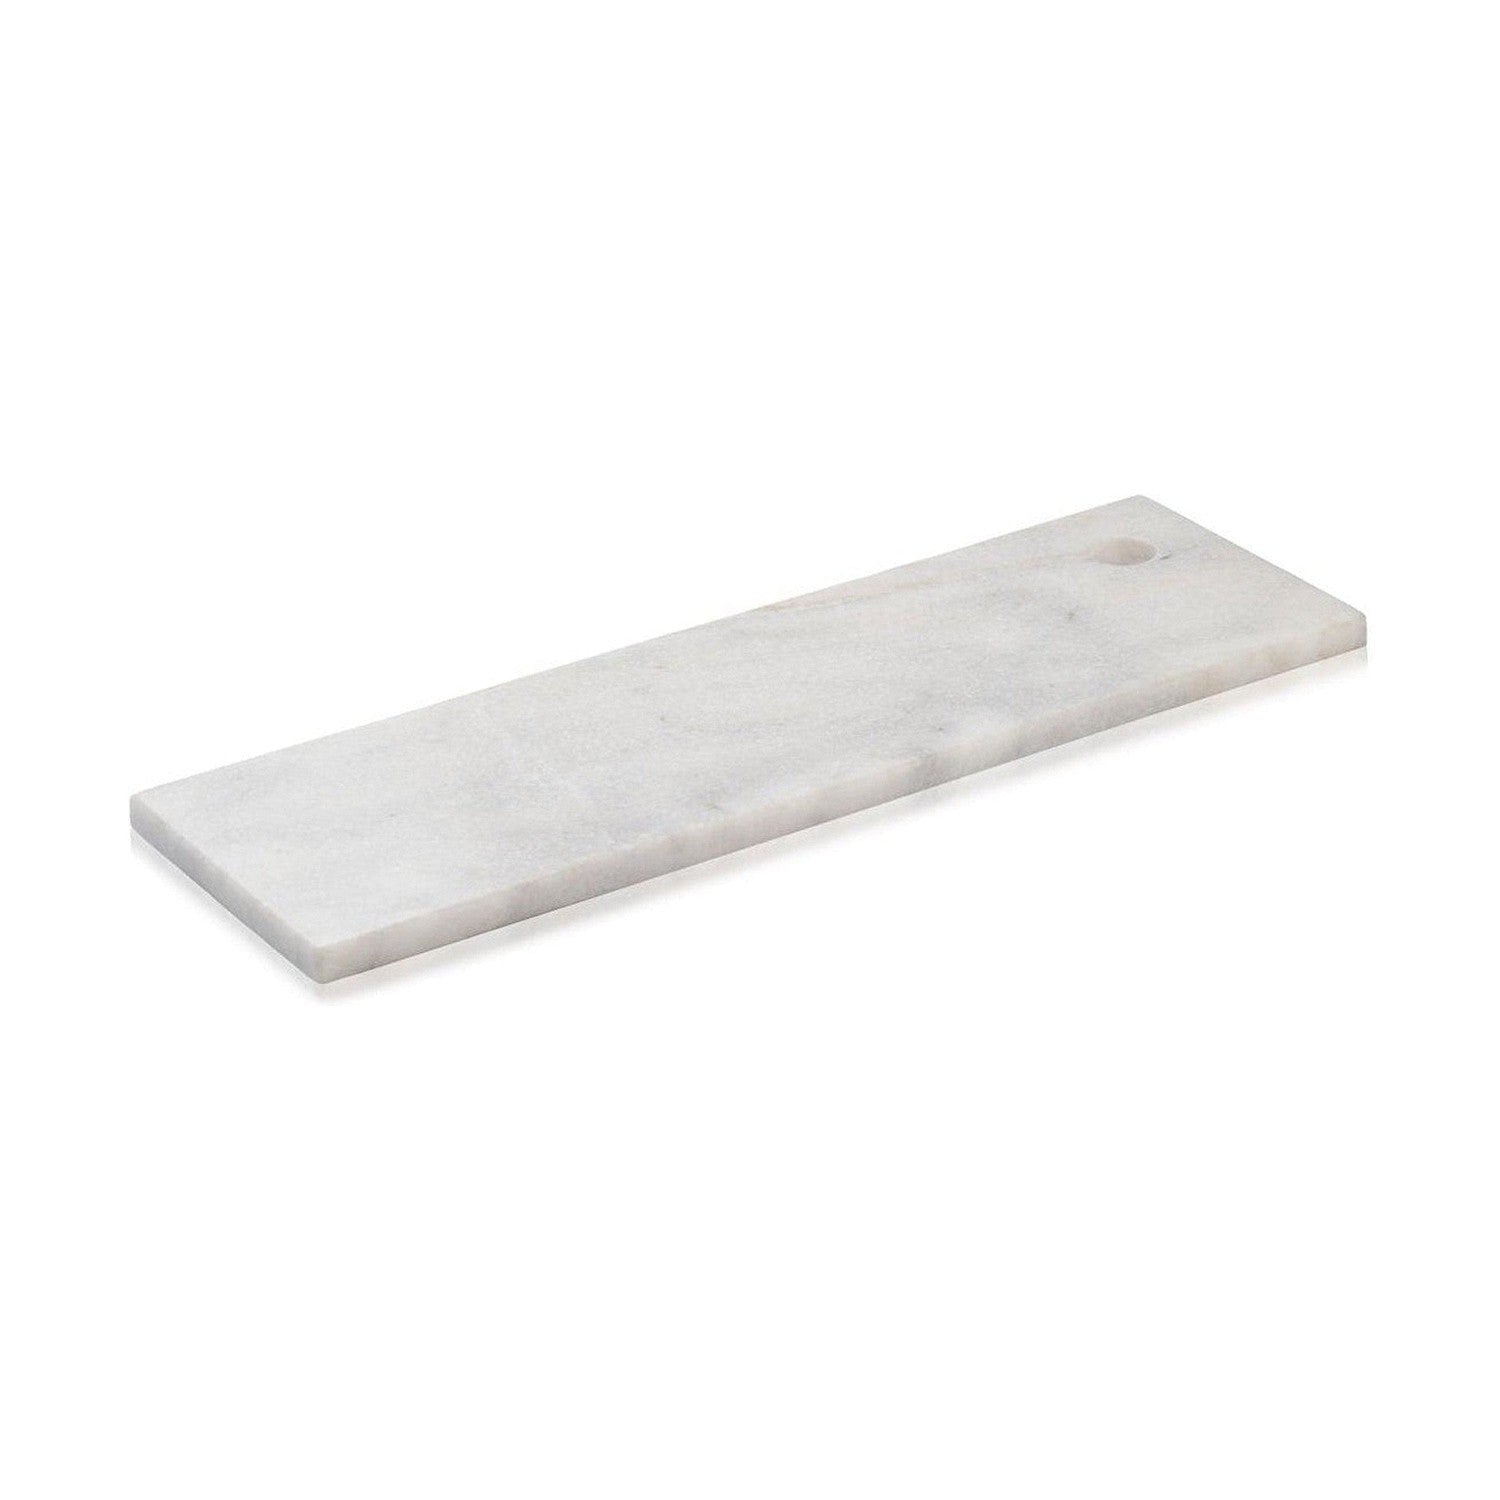 Humdakin Kerteminde Marmorplatte, Weiß